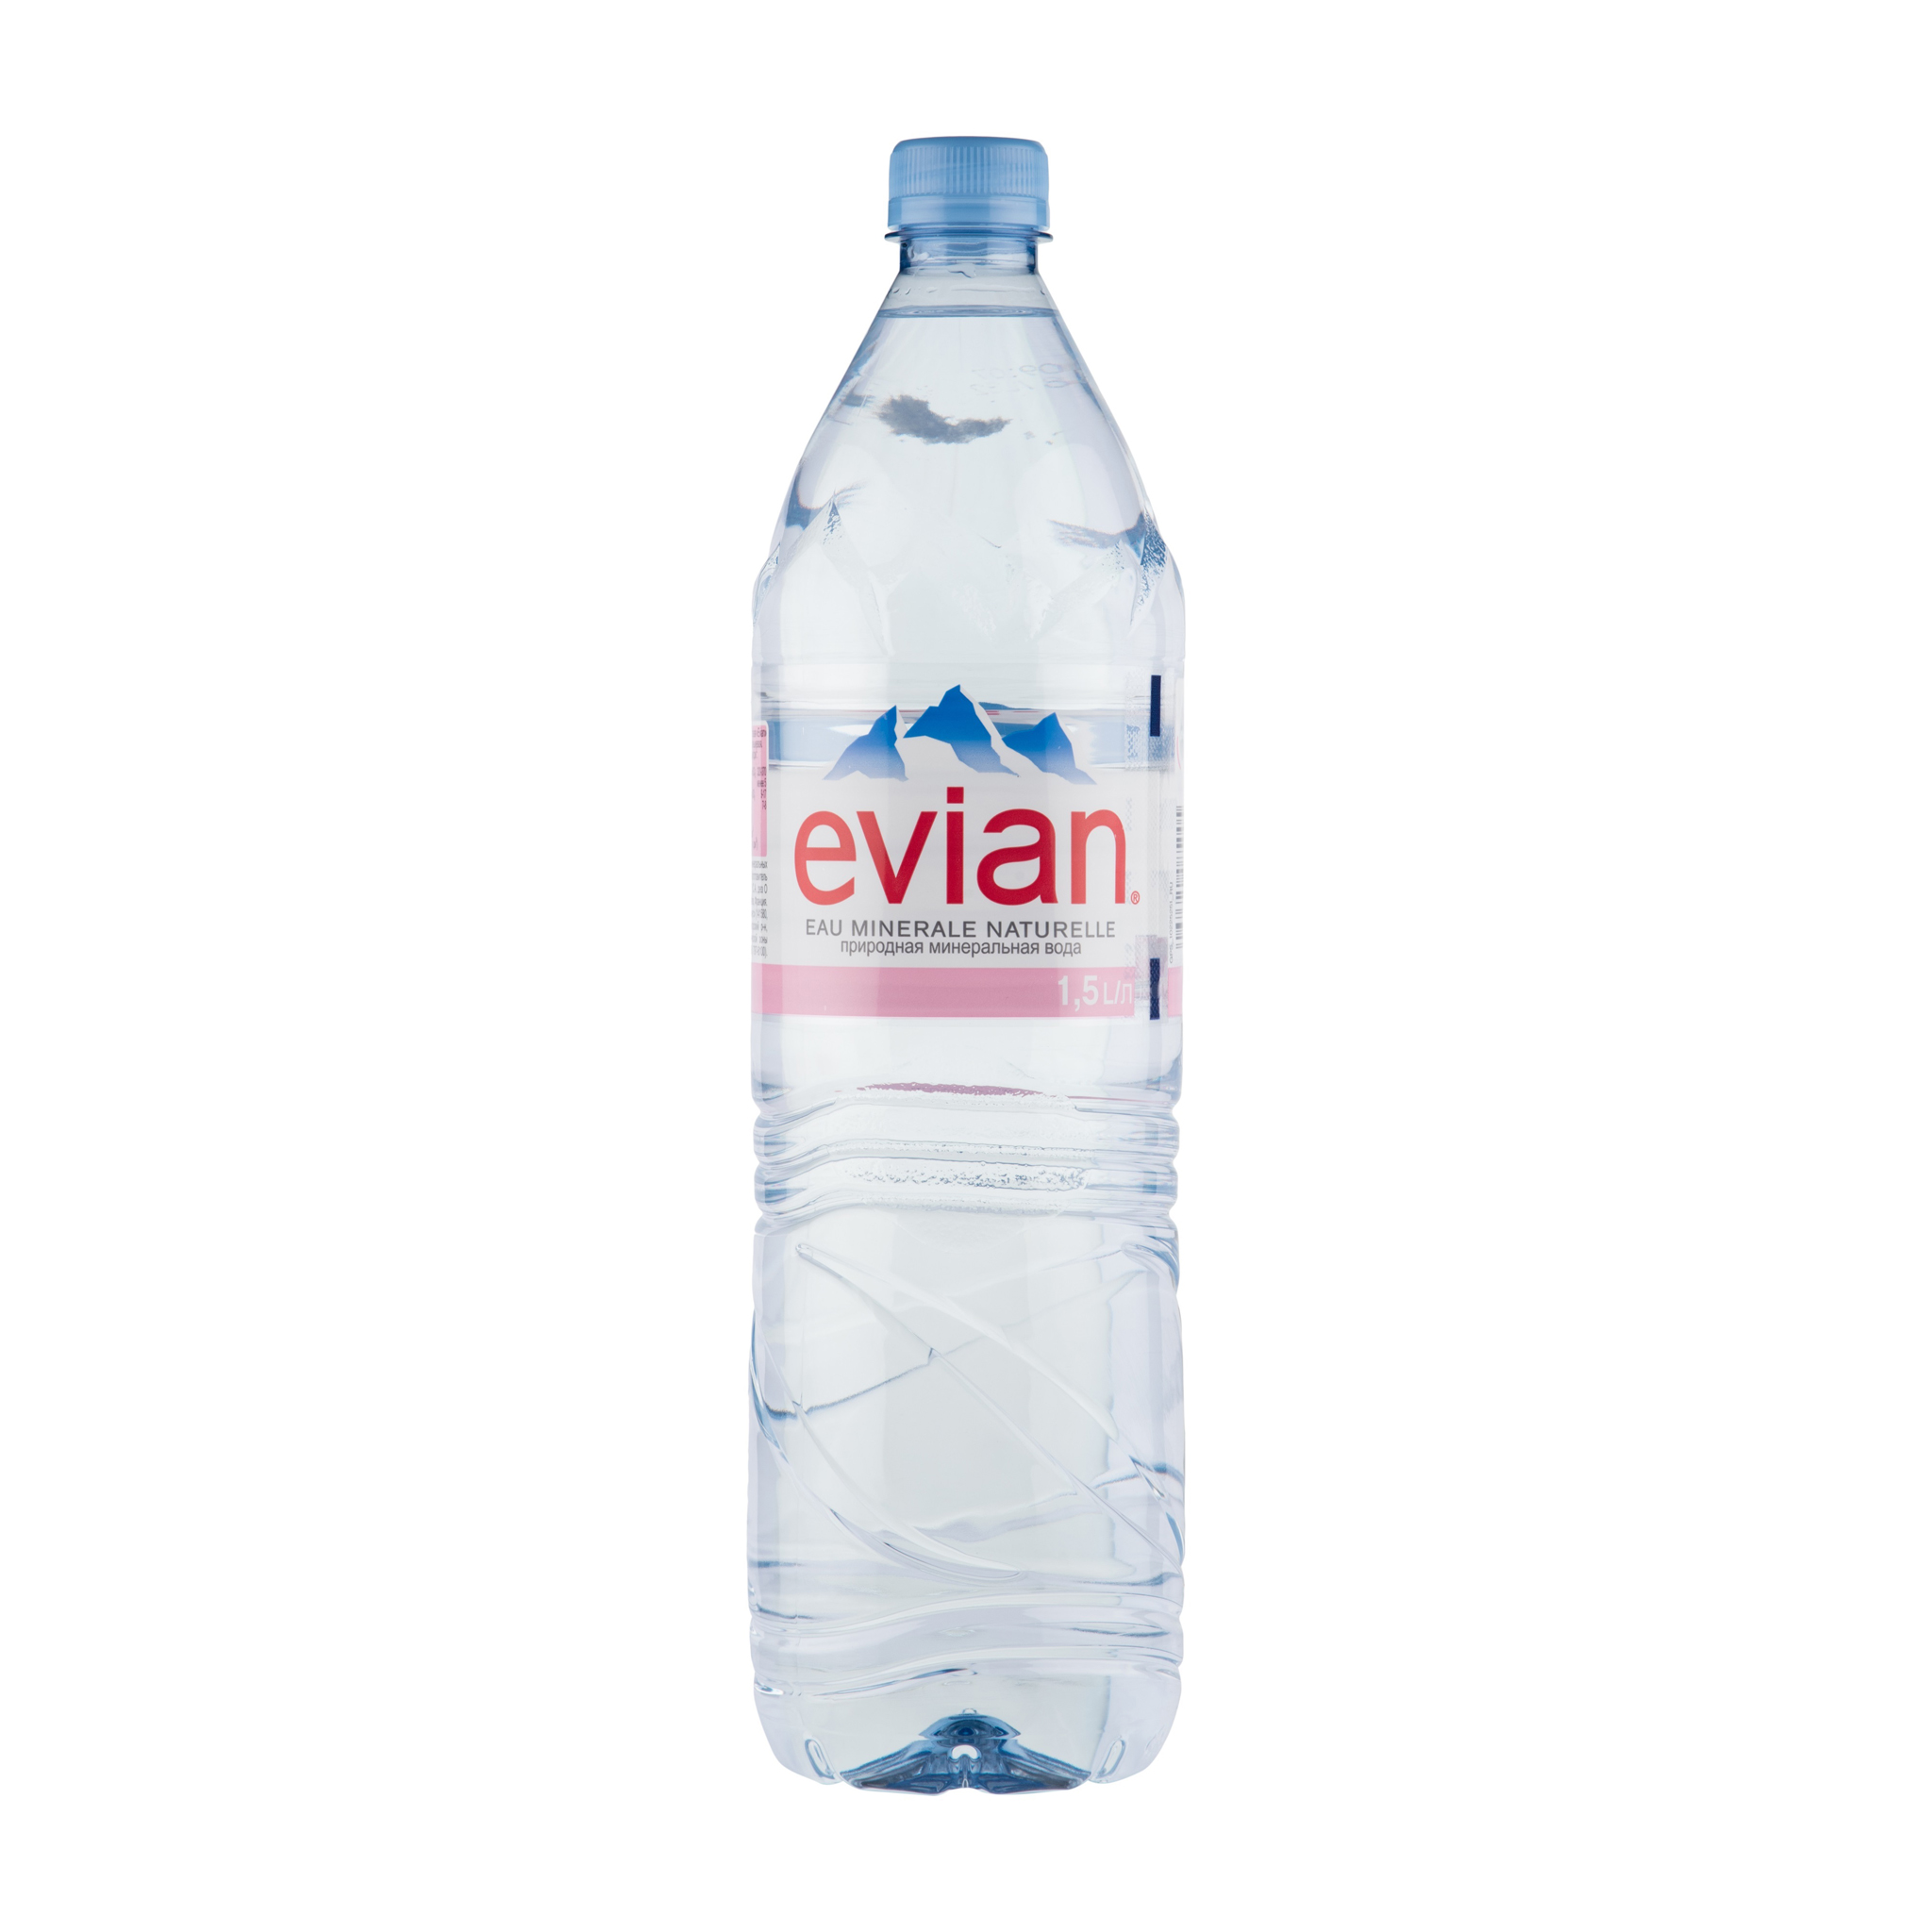 Негазировнная вода Evian - рейтинг 3,65 по отзывам экспертов ☑ .